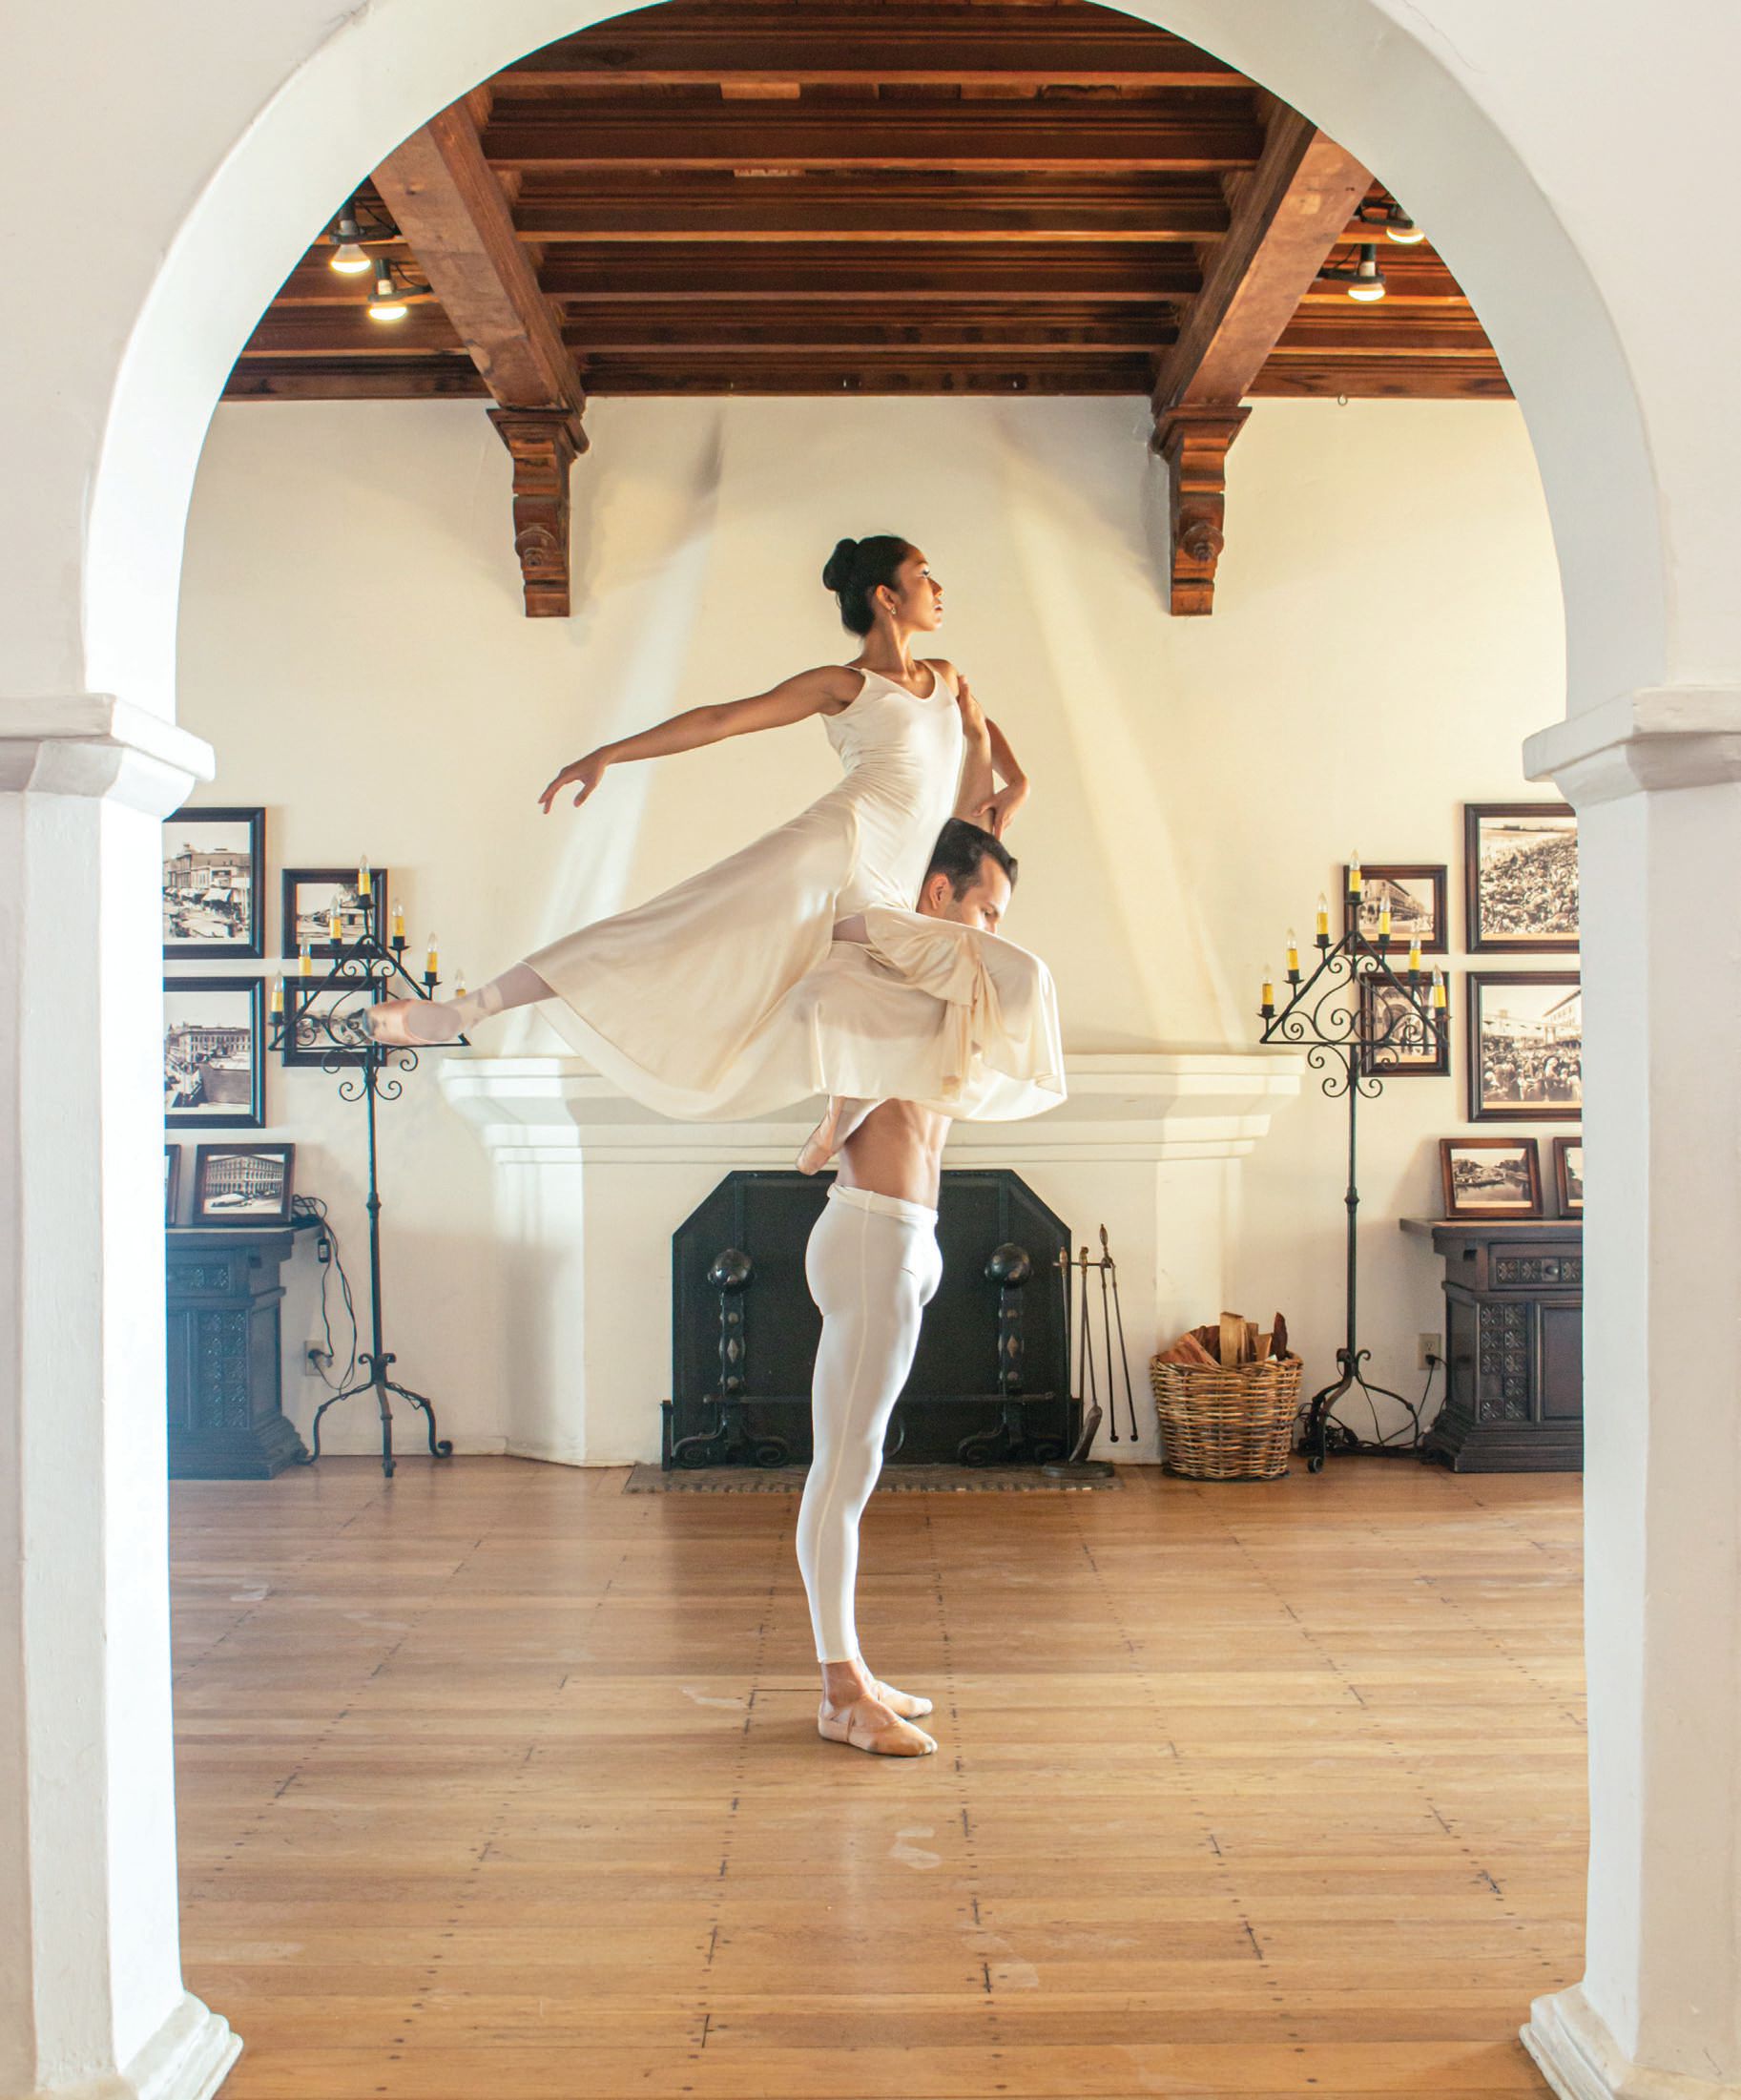 See Ballet Romantica at Casa Romantica Cultural Center and Gardens Feb. 17. PHOTO COURTESY OF CASA ROMANTICA